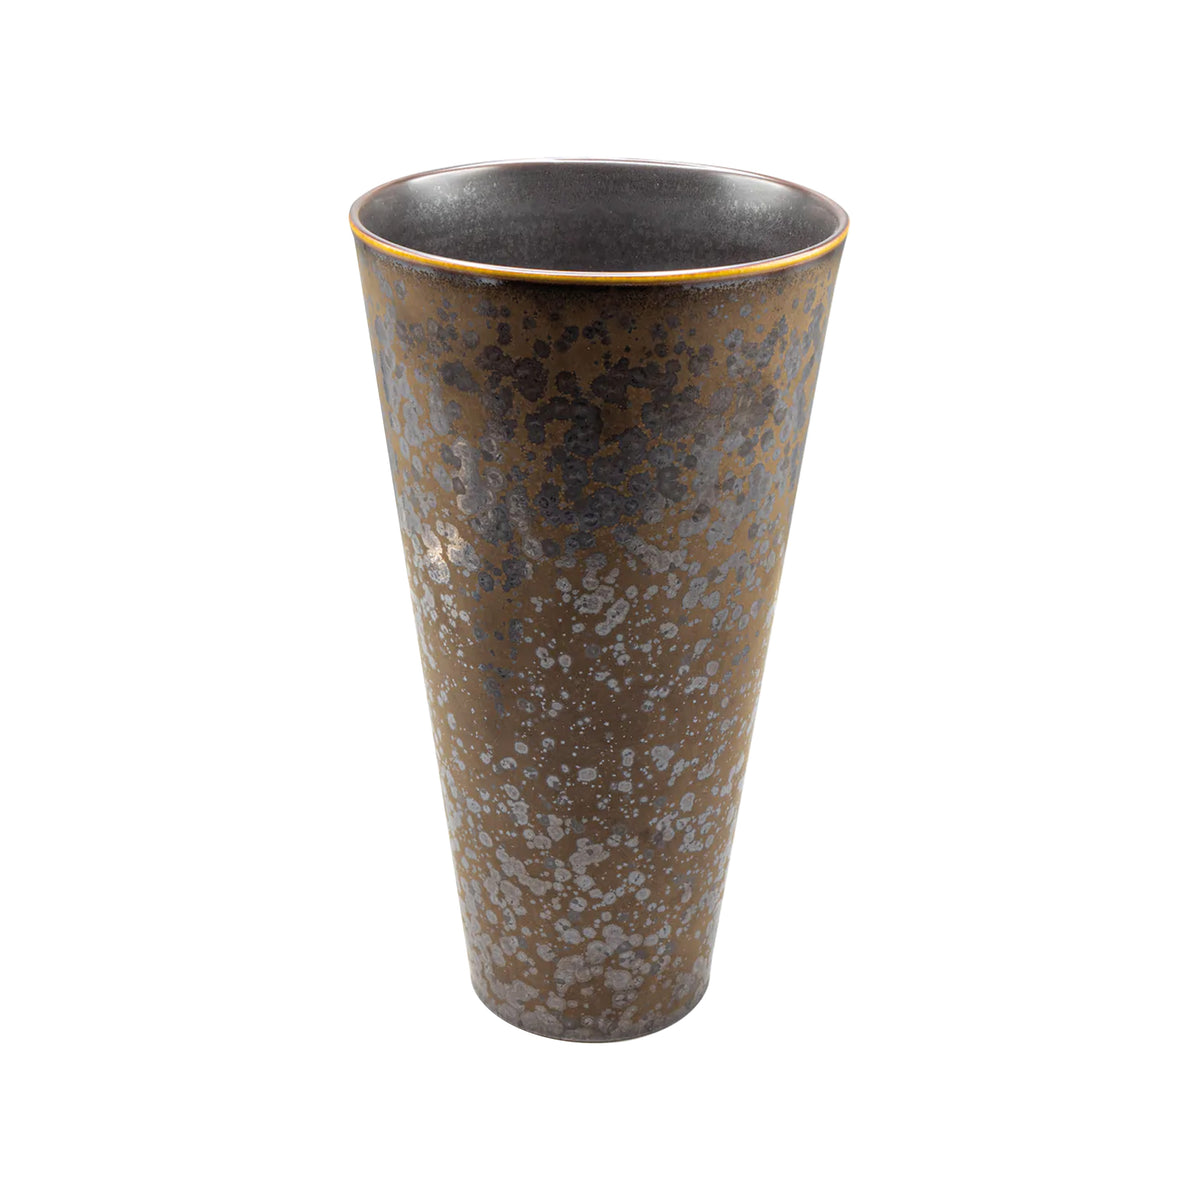 AGUIRRE - Straight vase, large